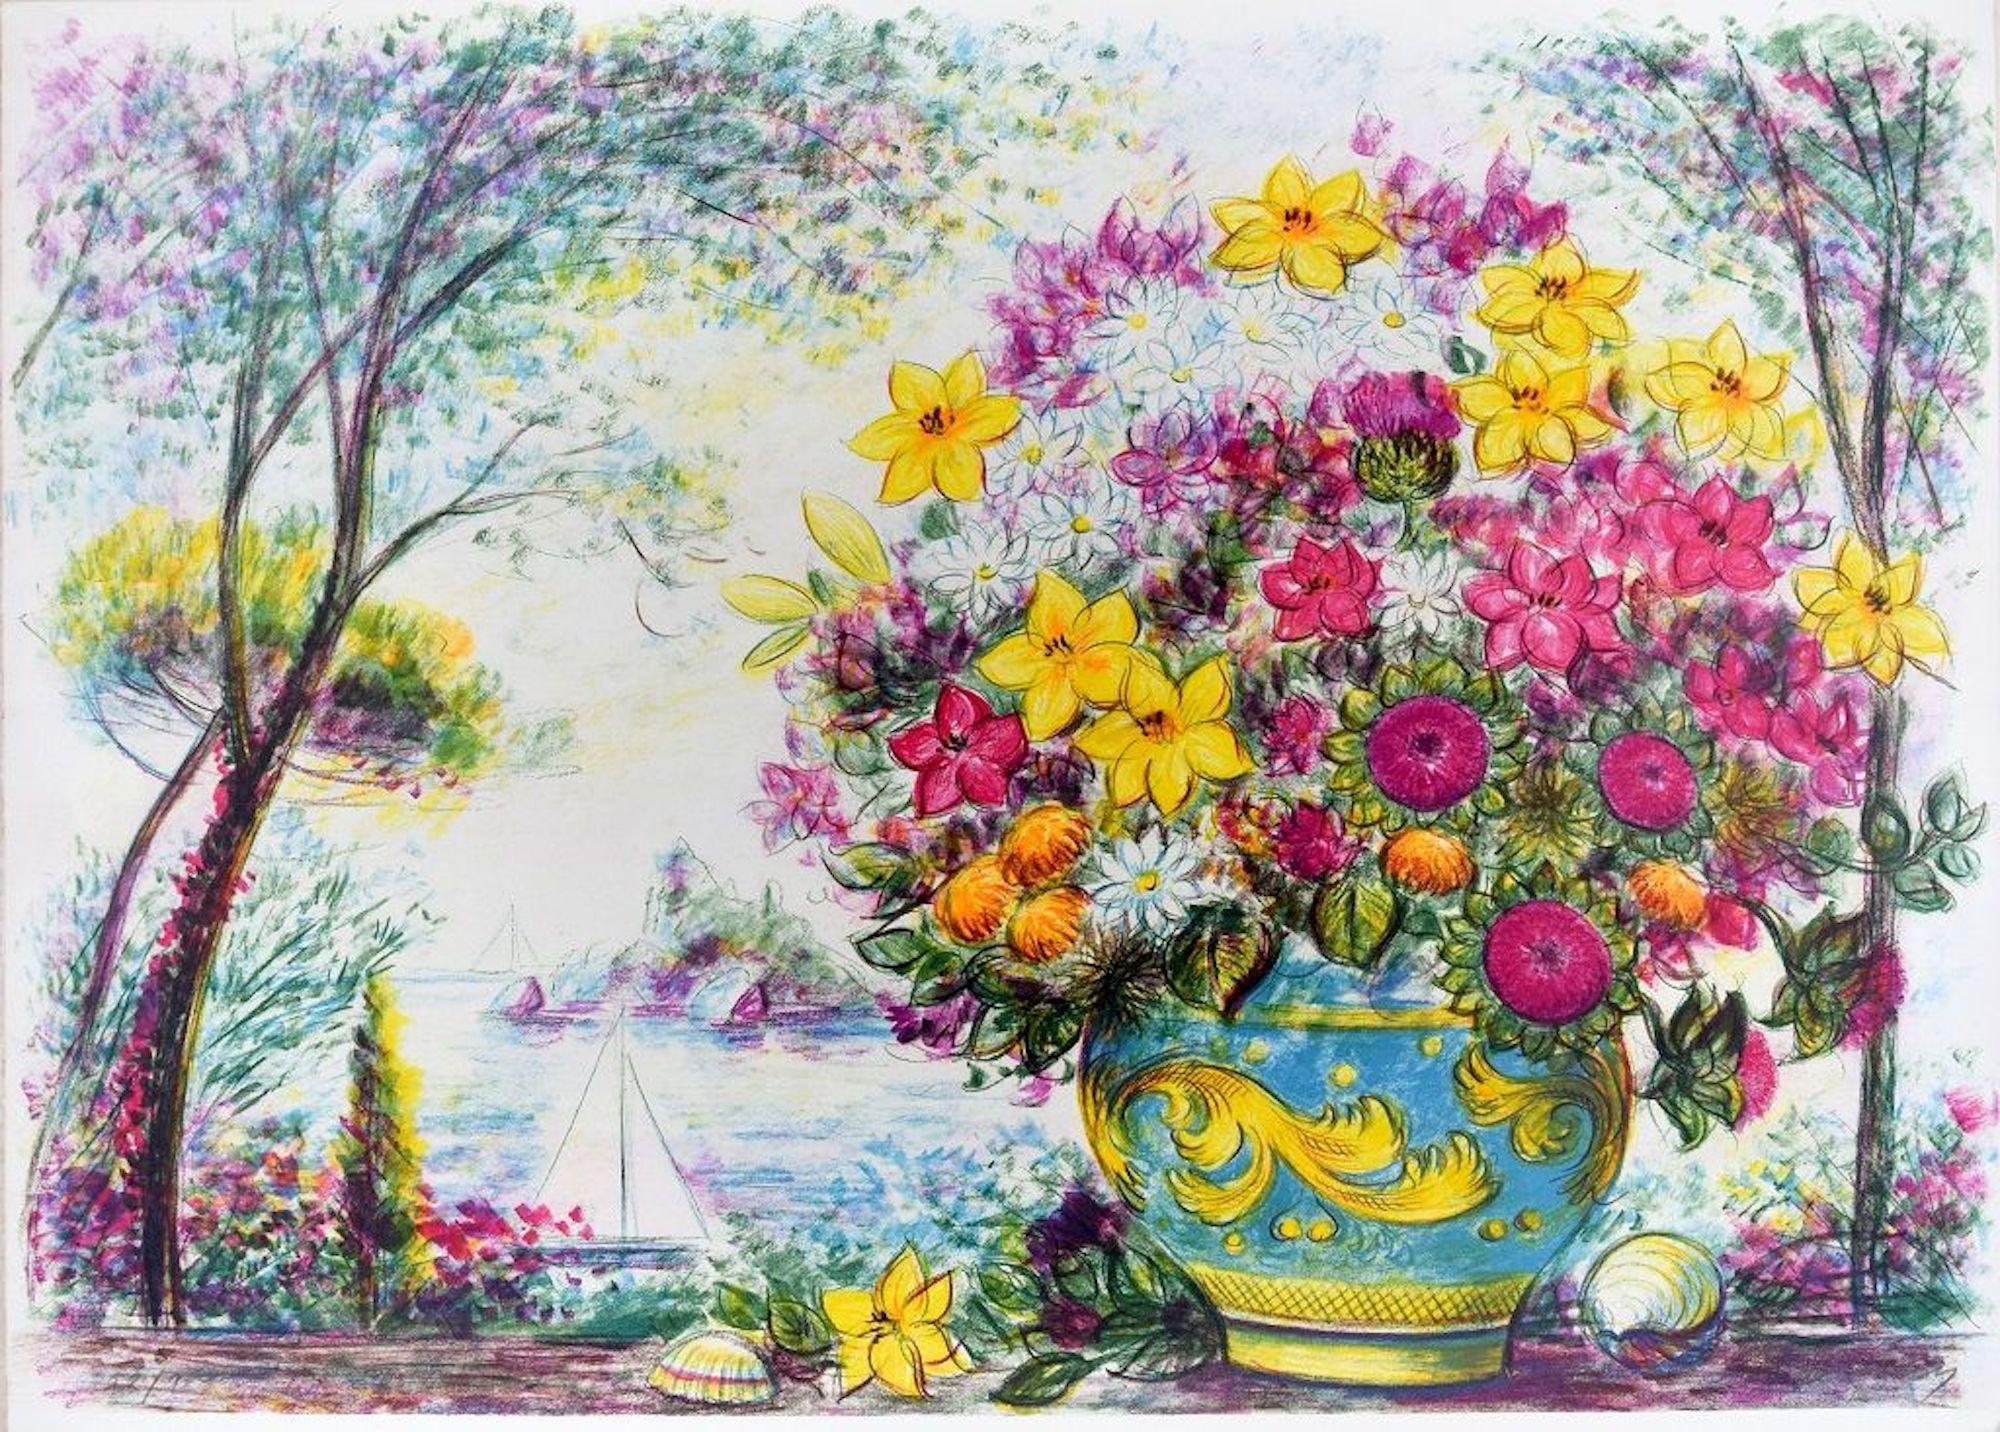 Blumentopf ist eine wunderschöne Farblithografie auf Papier, die 1988 von dem Künstler Jovan Vulic (1951) geschaffen wurde.

Handsigniert und nummeriert mit Bleistift am unteren Rand. 150 Exemplare.

Dieses zeitgenössische Kunstwerk, das im naiven